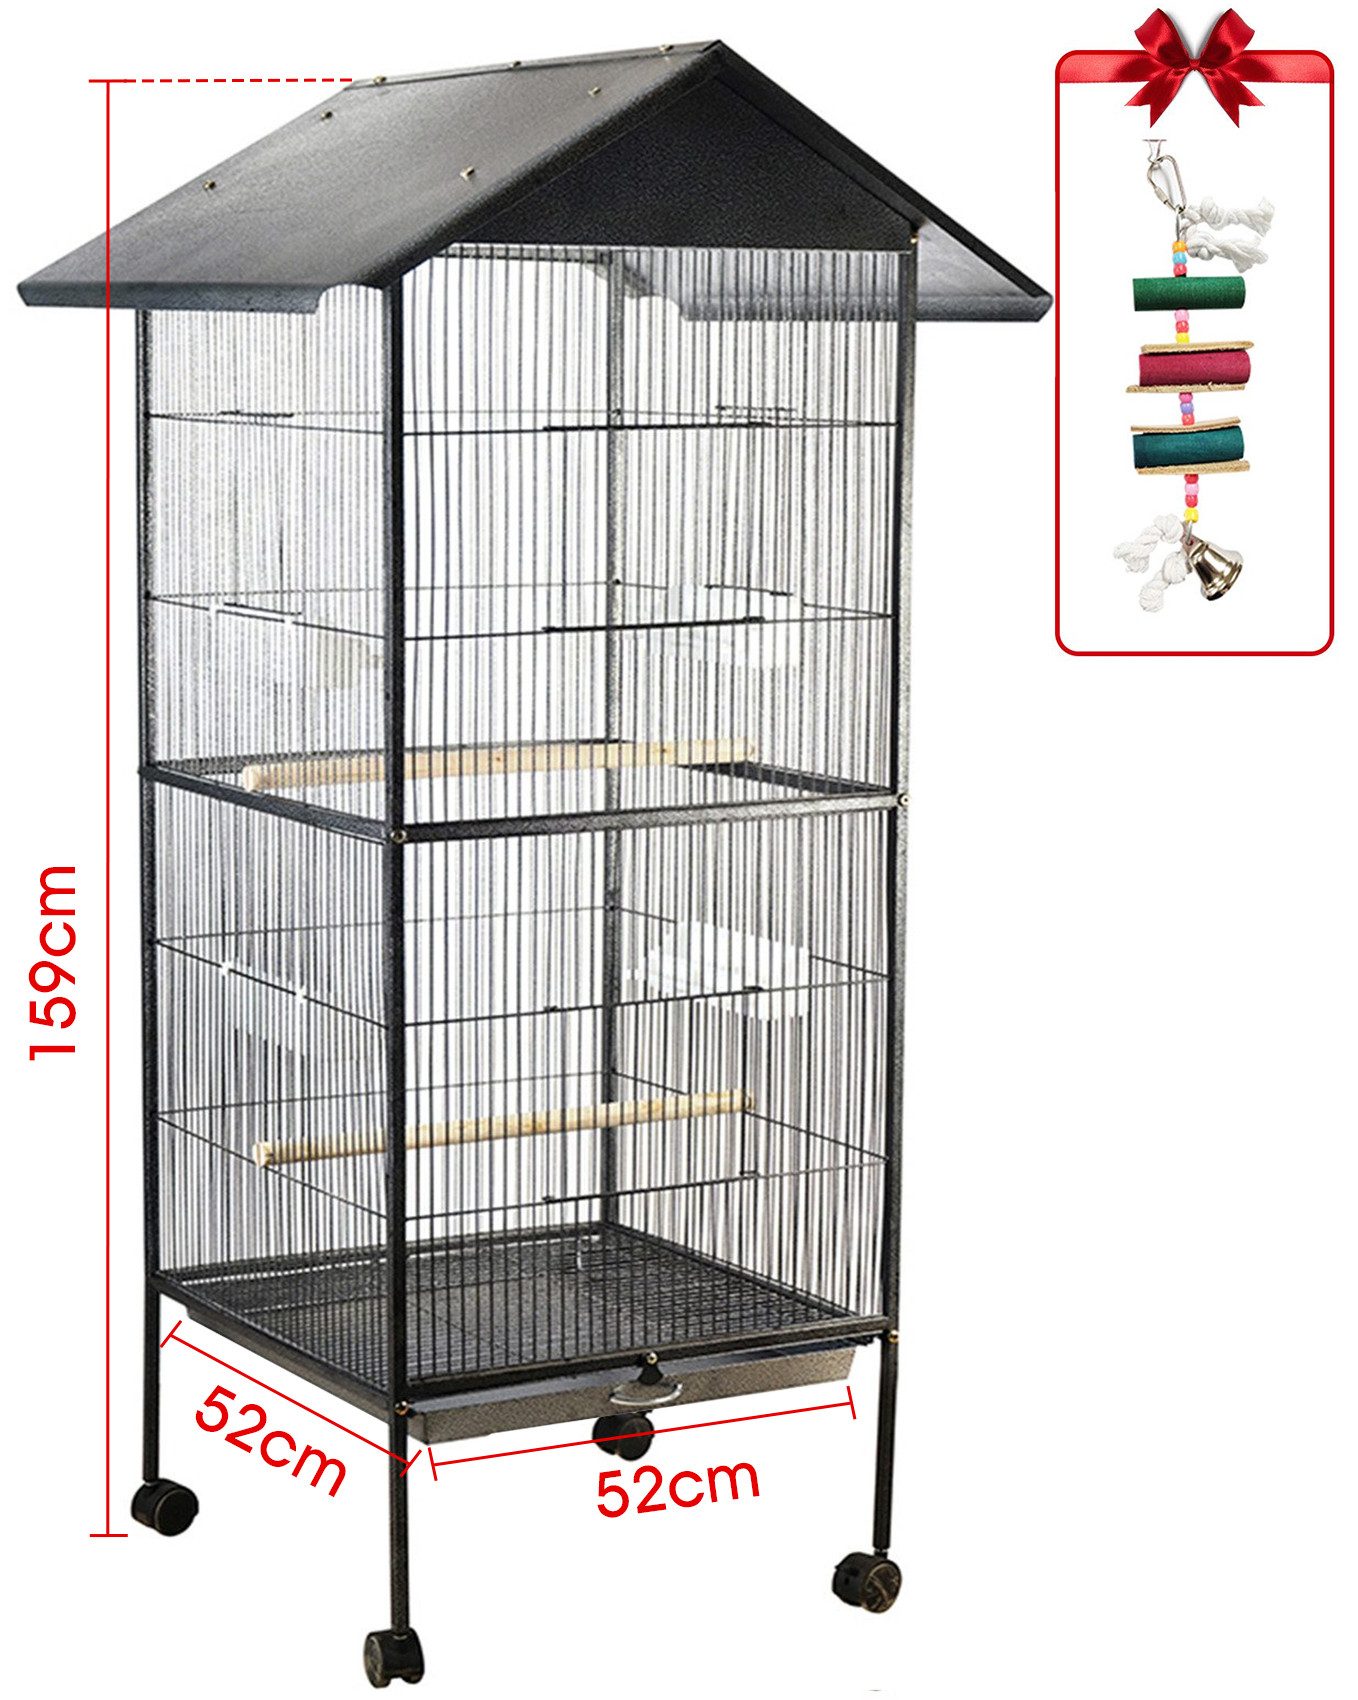 Hiazurm Vogelkäfig Vogelkäfig, Vogelvoliere Papageienkäfig, Tierkäfig Vogelkäfig große Kapazität Nesting Supplies,52 x 52 x159cm